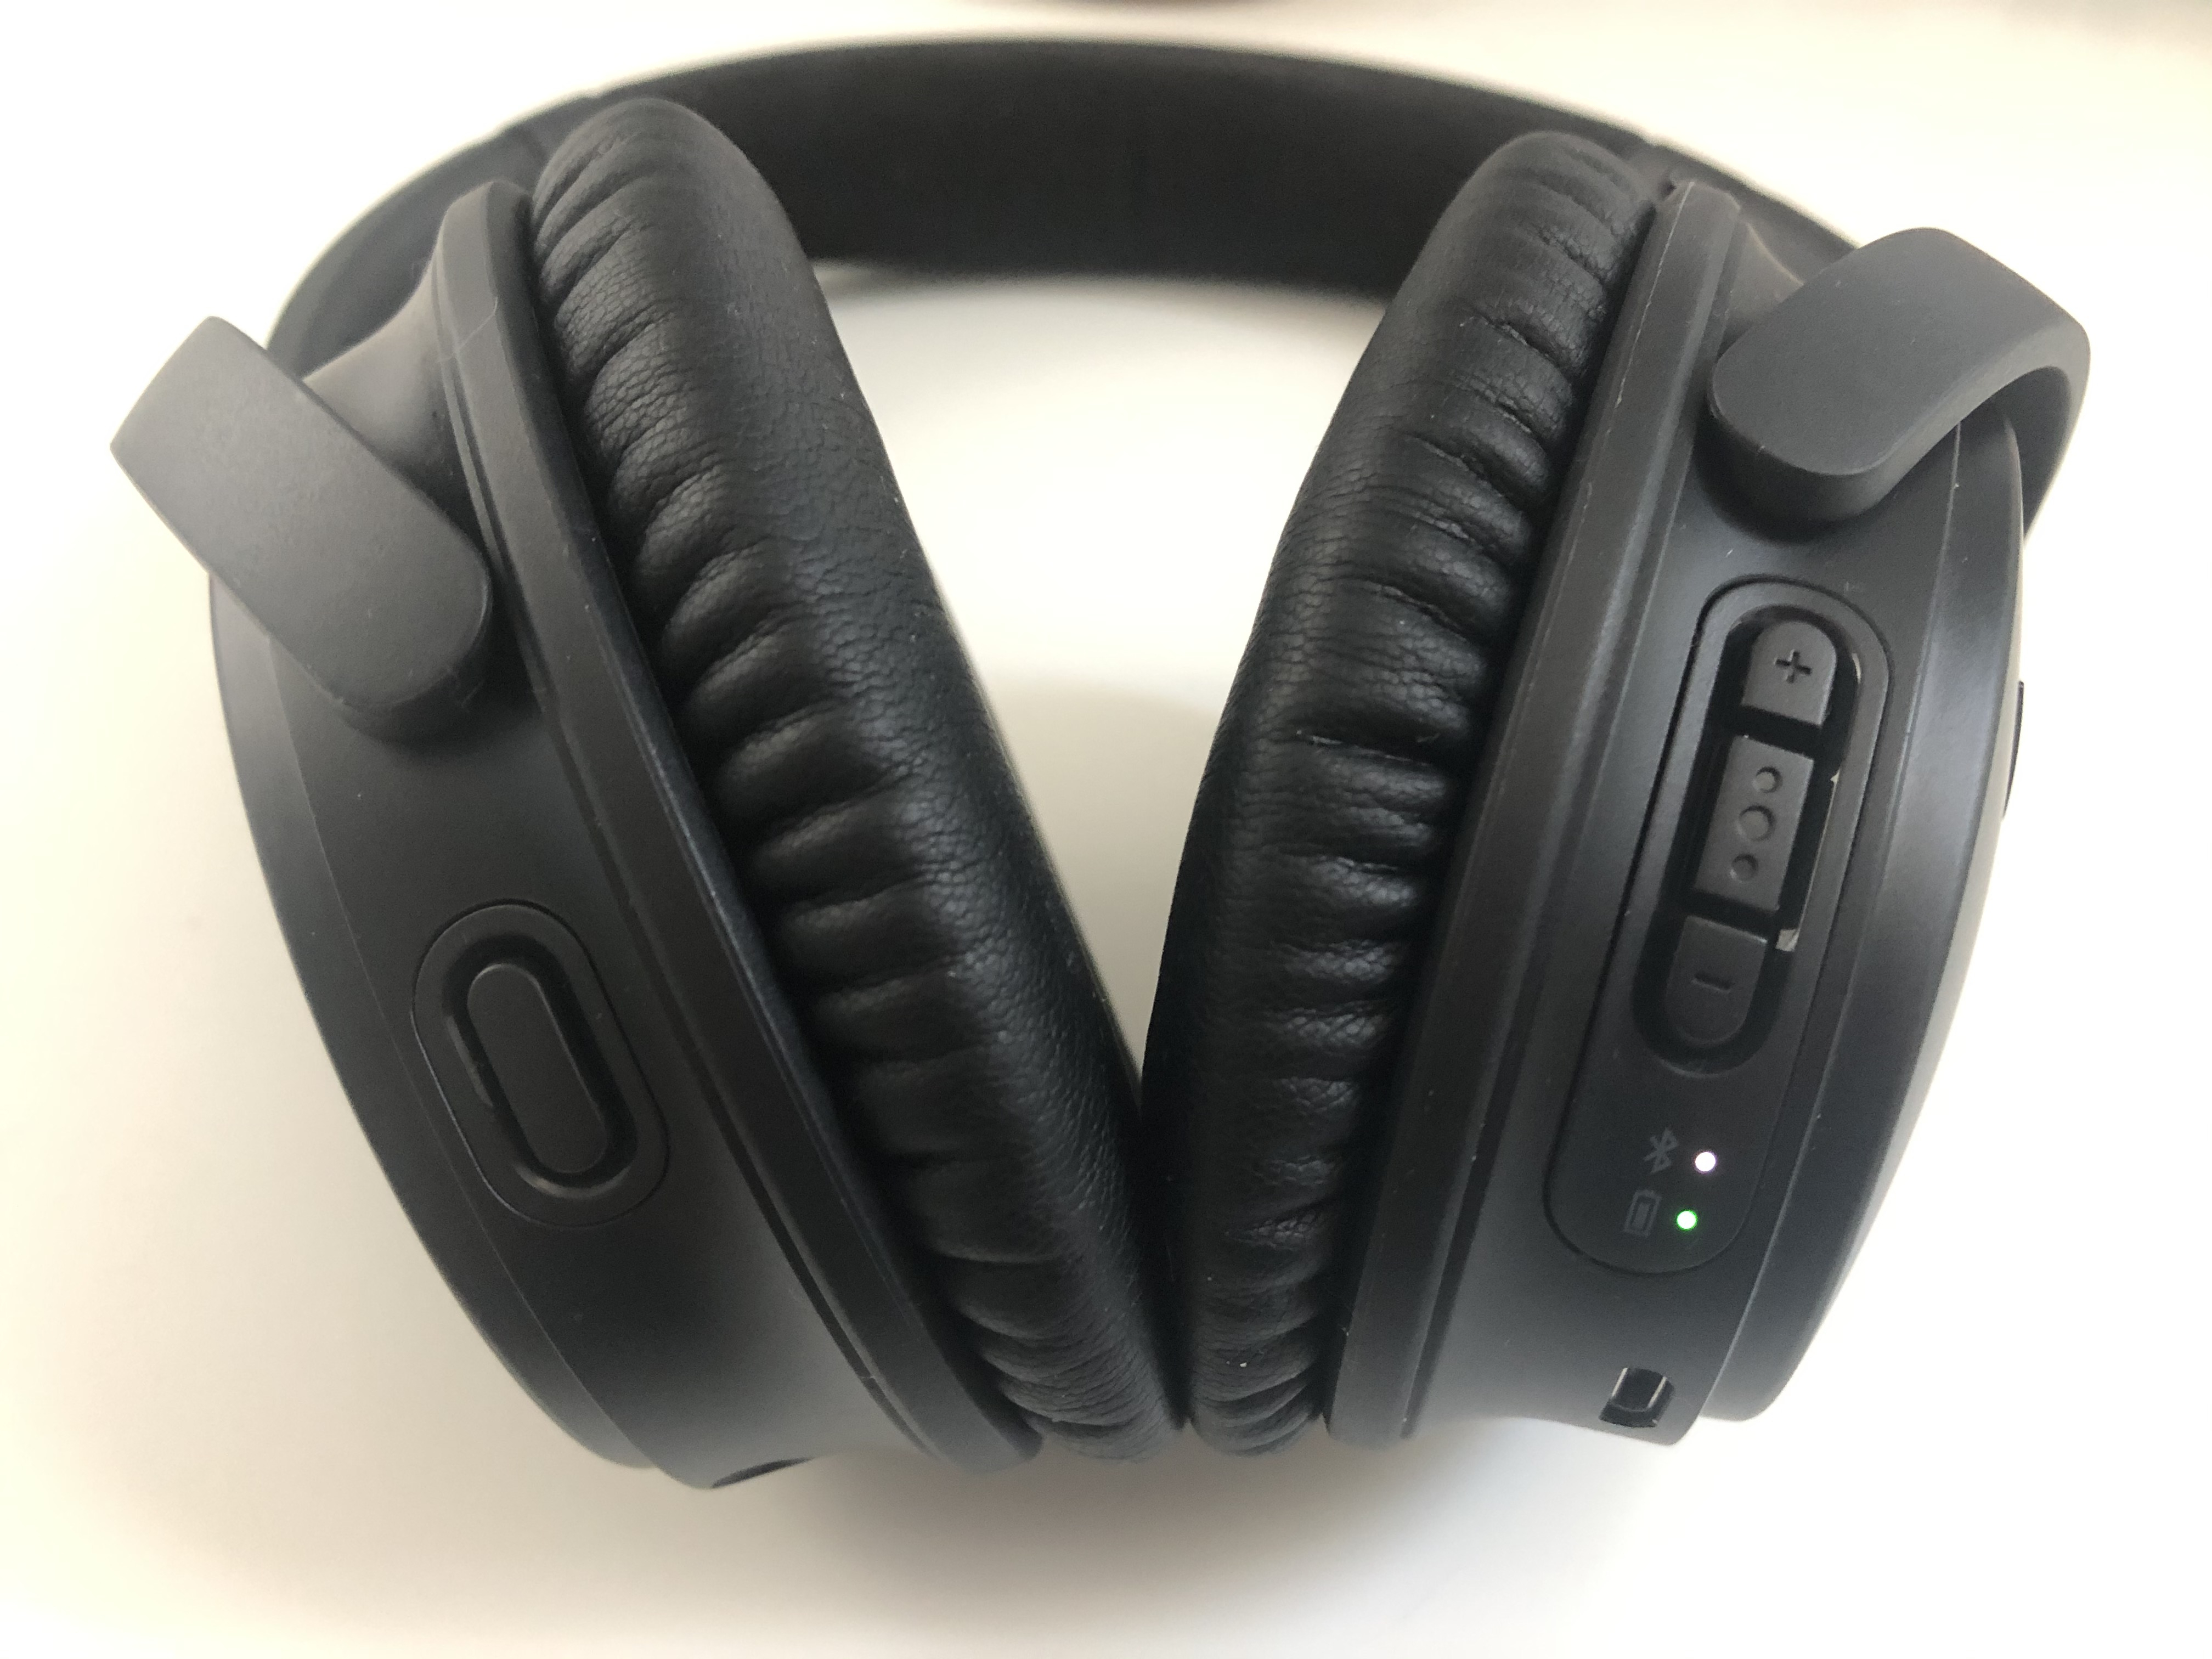 Achat reconditionné Bose QuietComfort 25 écouteurs à réduction de bruit  noir [Android]